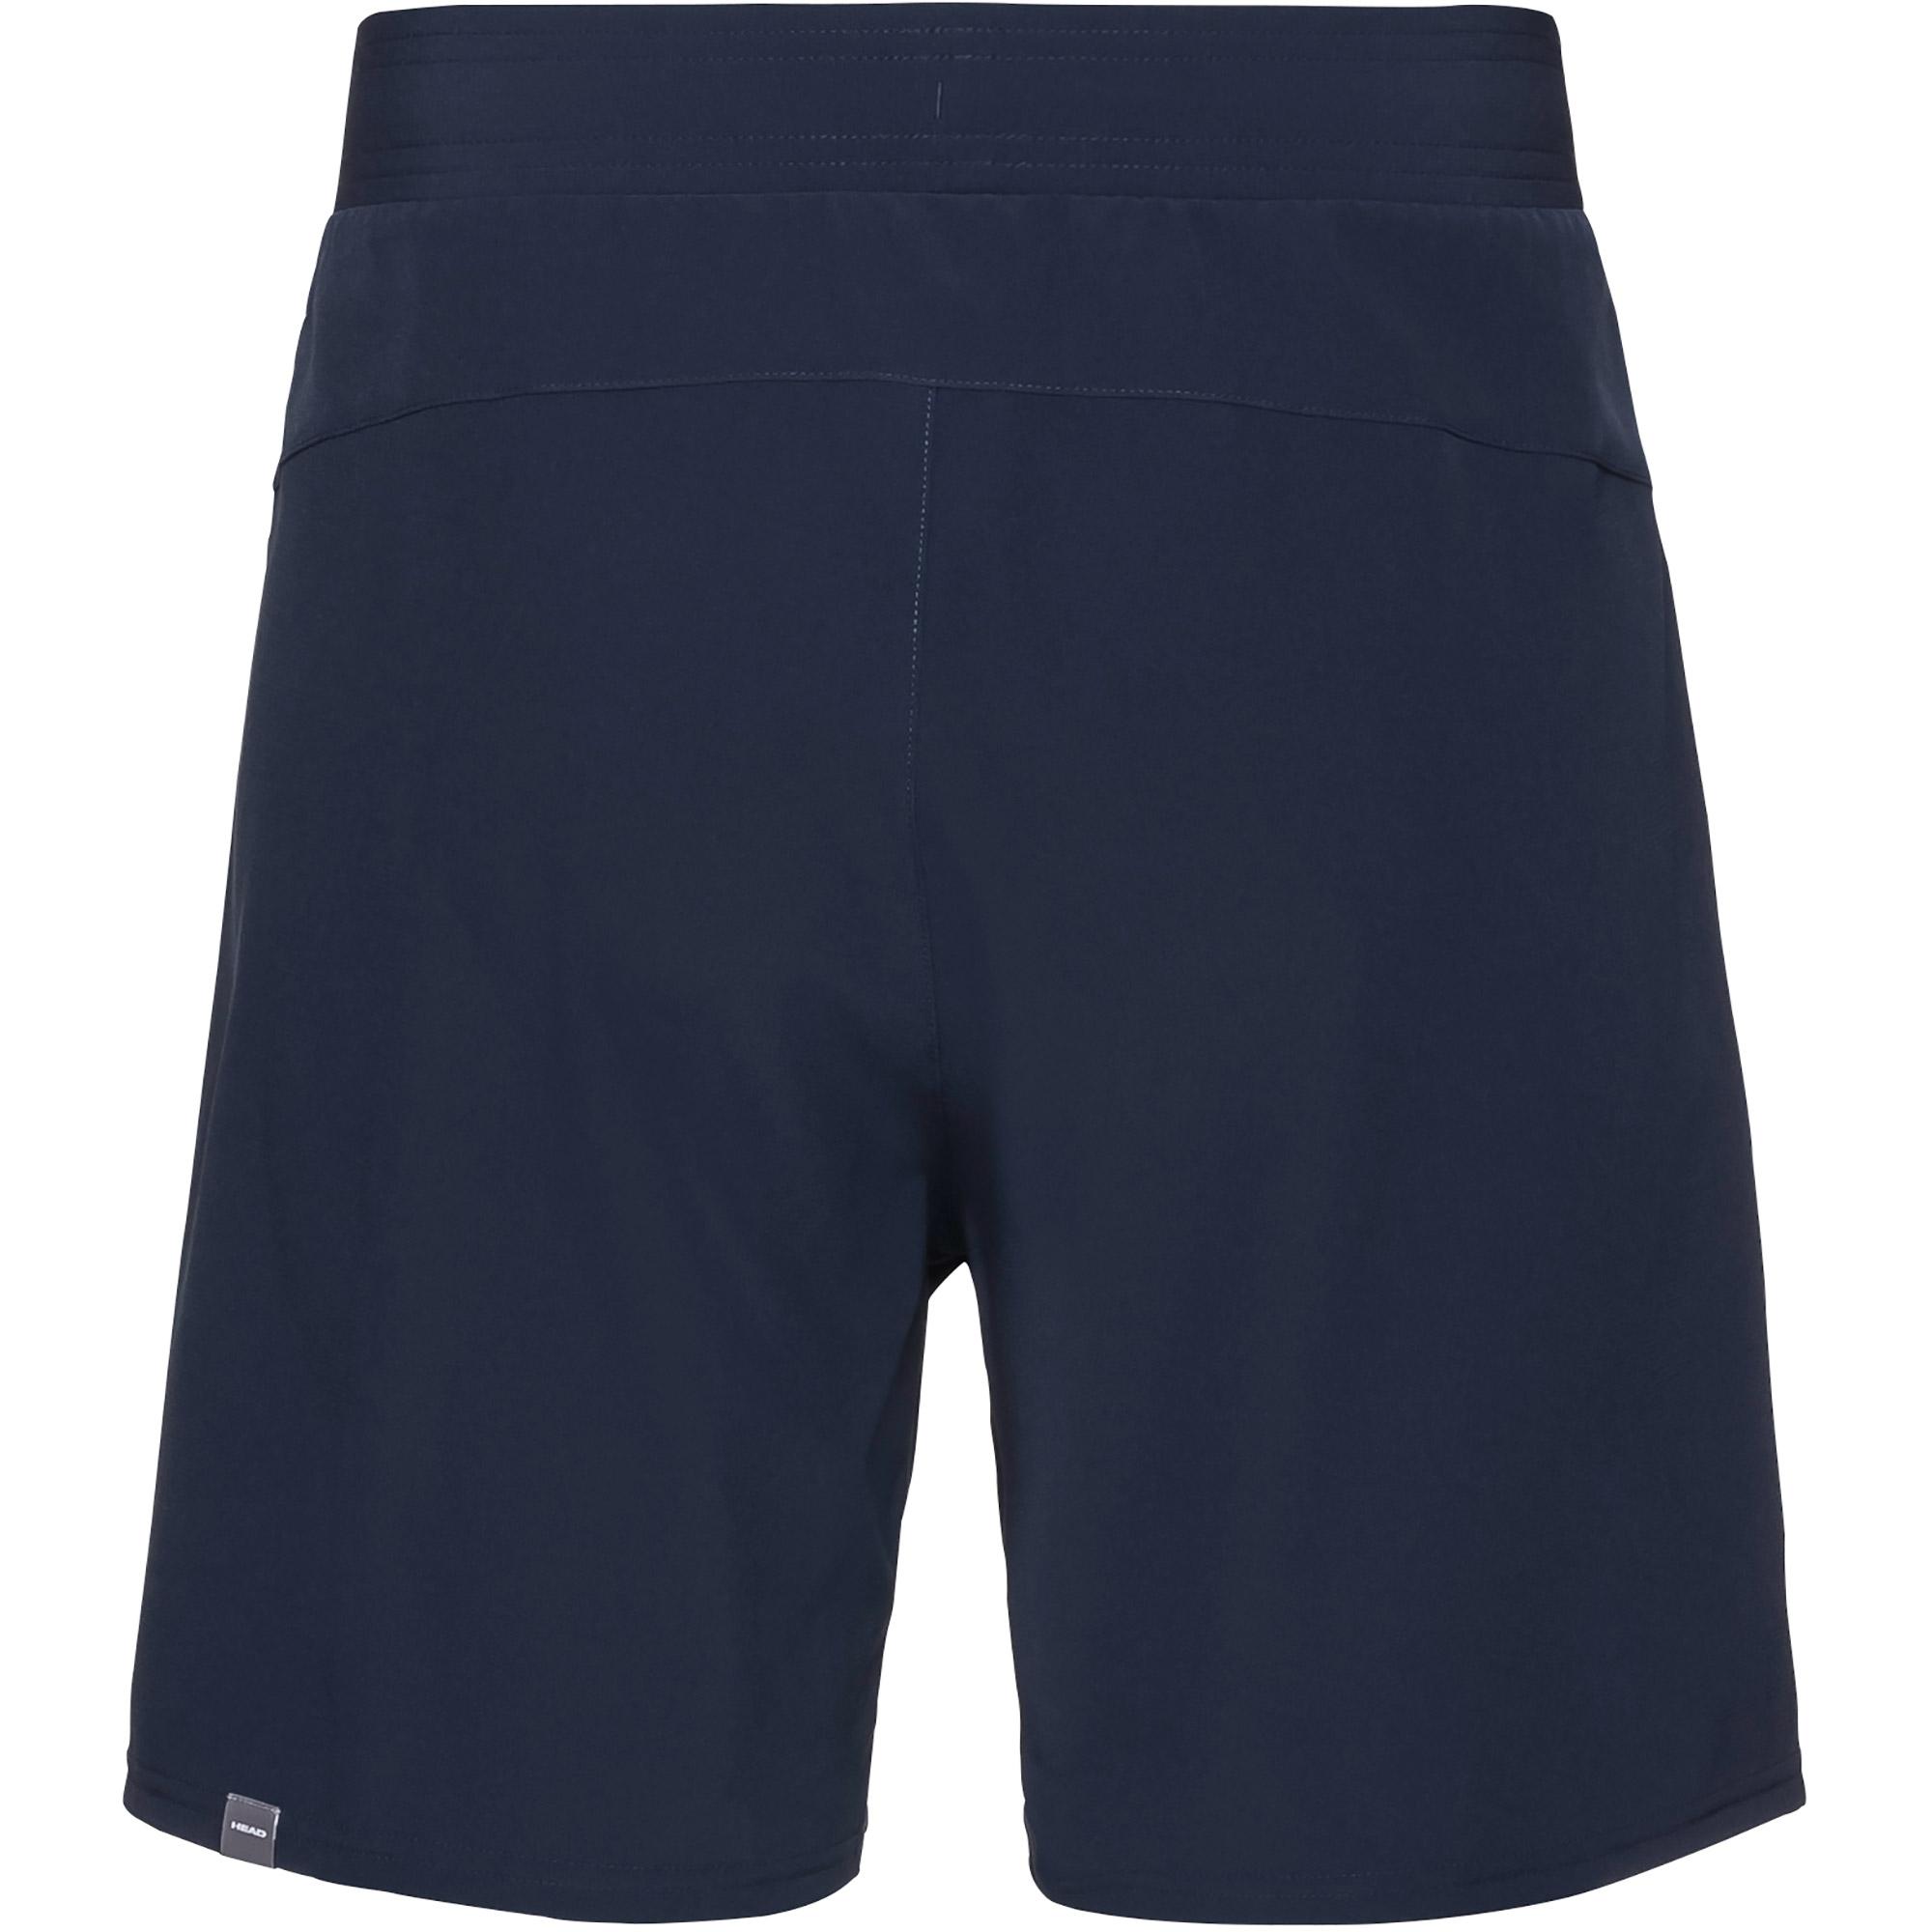 Head Mens Medley Shorts - Dark Blue/Royal Blue - Tennisnuts.com